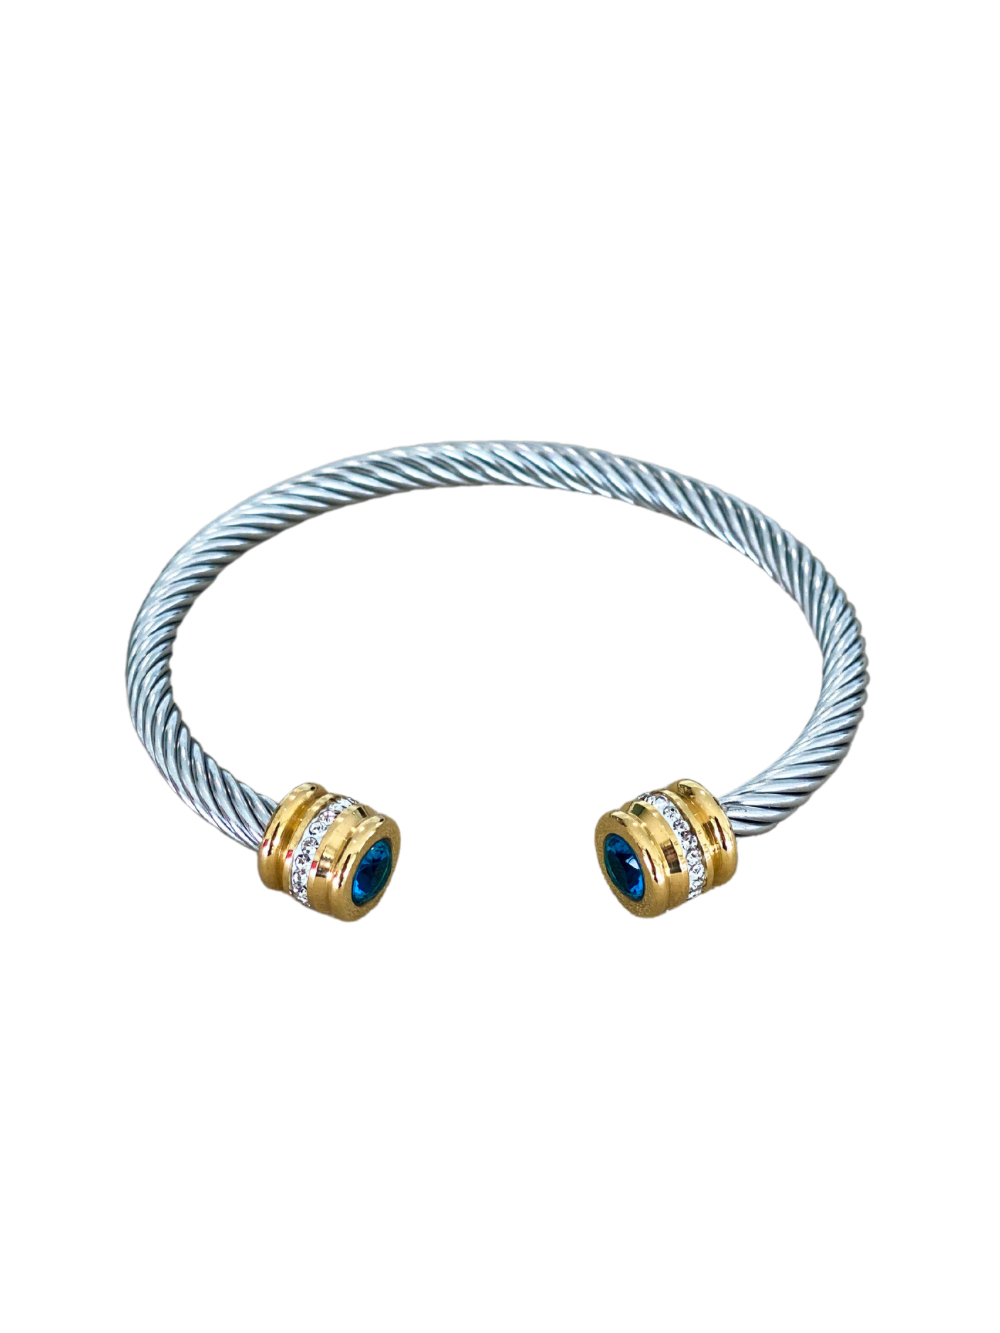 Blue Two Tone Cable Bracelet